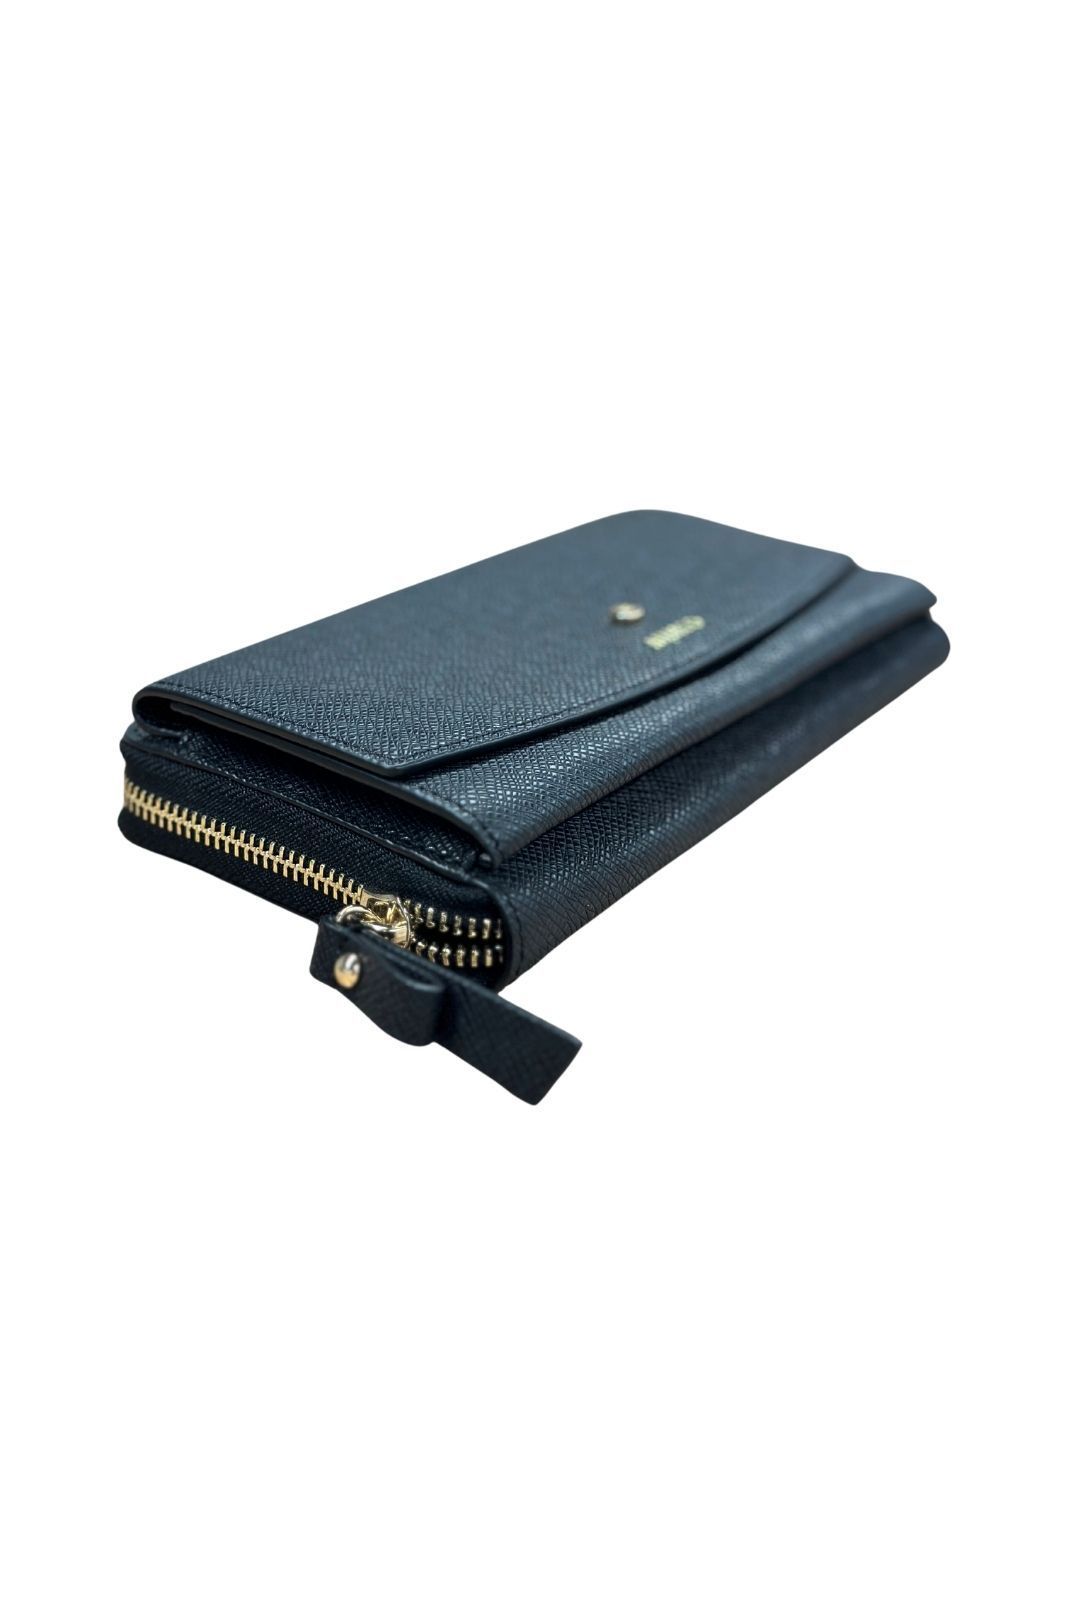 Mimco Black Multi Compartment Wallet